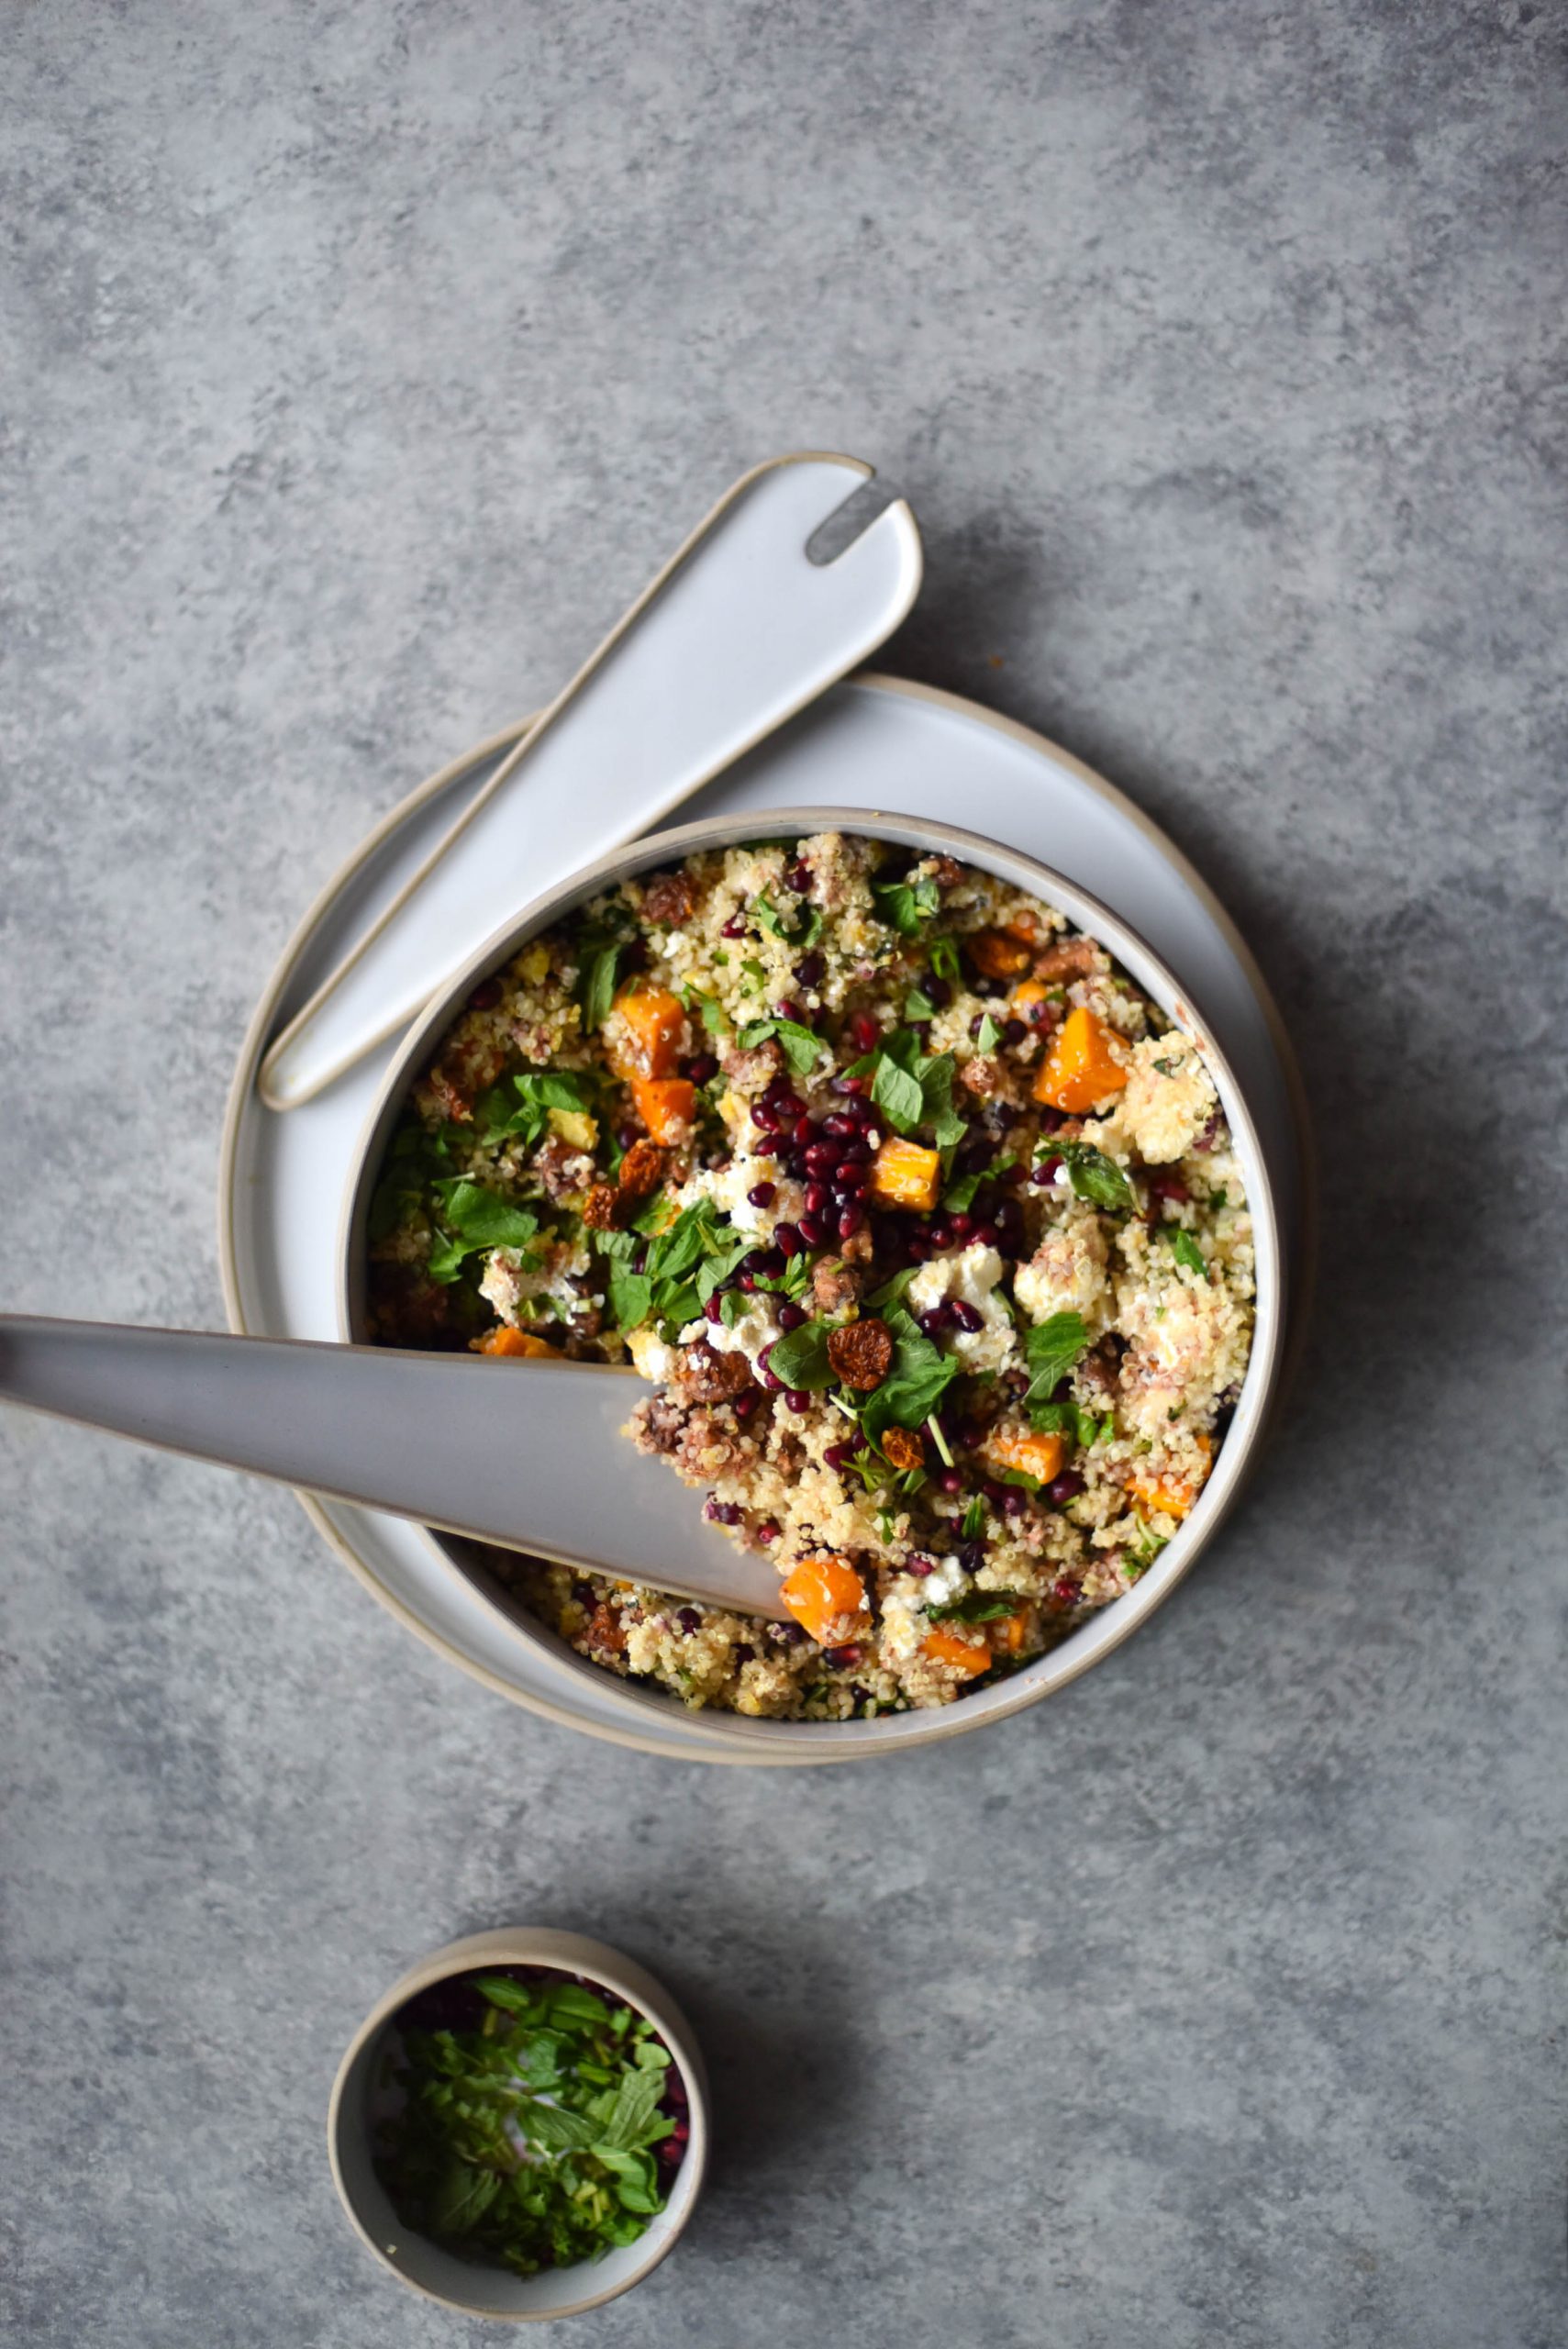 A bowl of vegetarian quinoa salad on a light backdrop